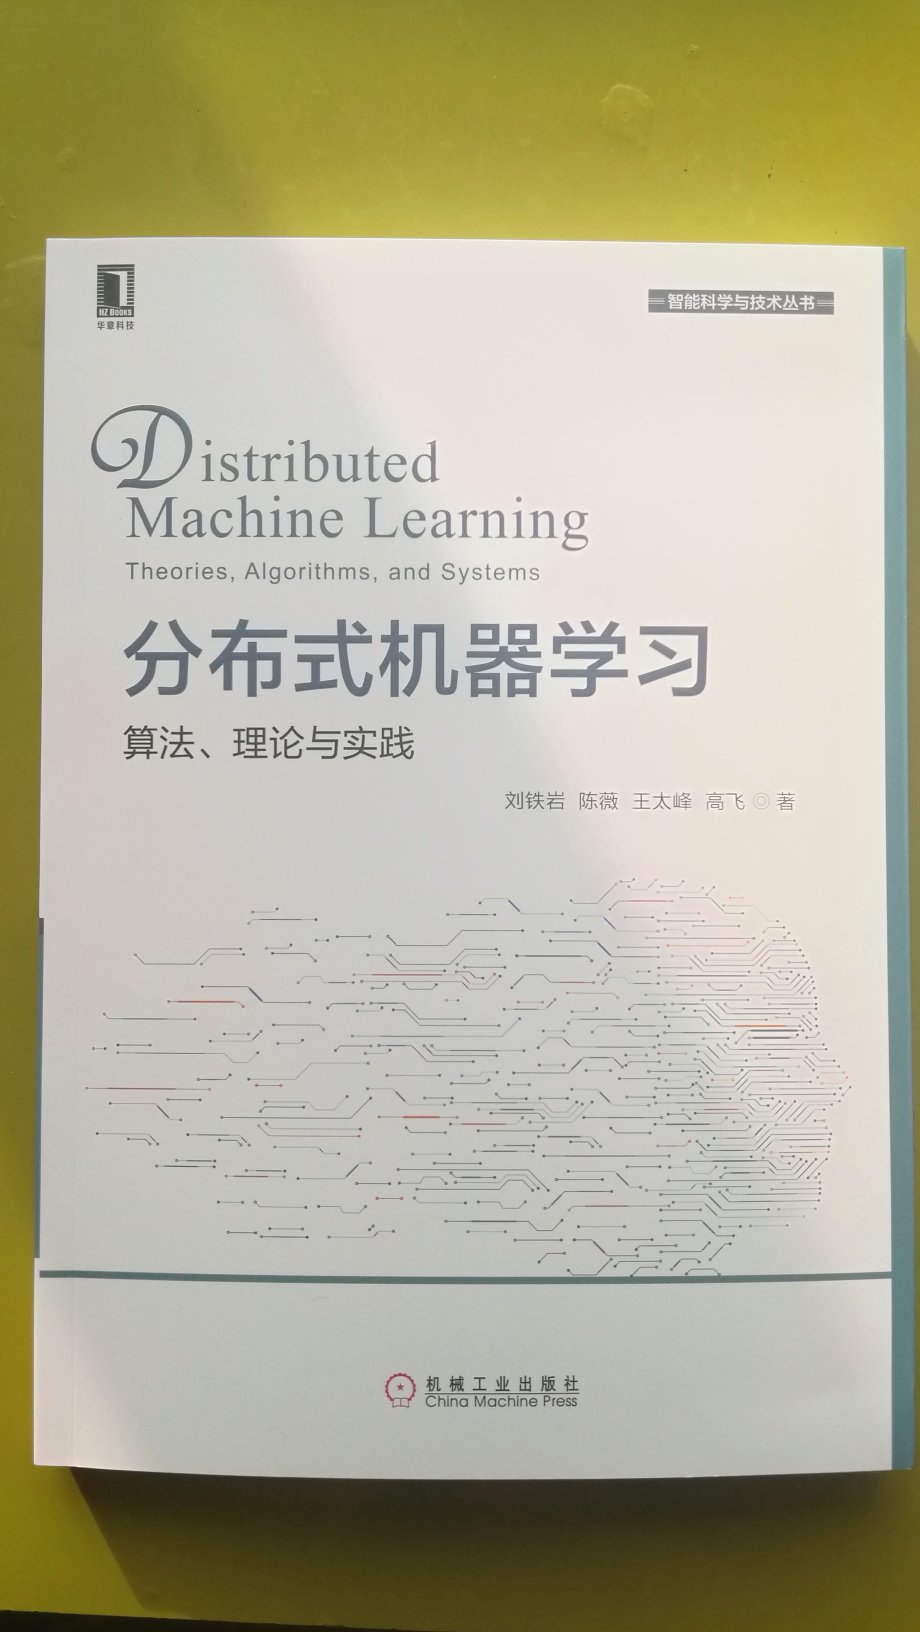 分布式机器学习在当今大数据和人工智能流行的今天，是一本很好的参考书。